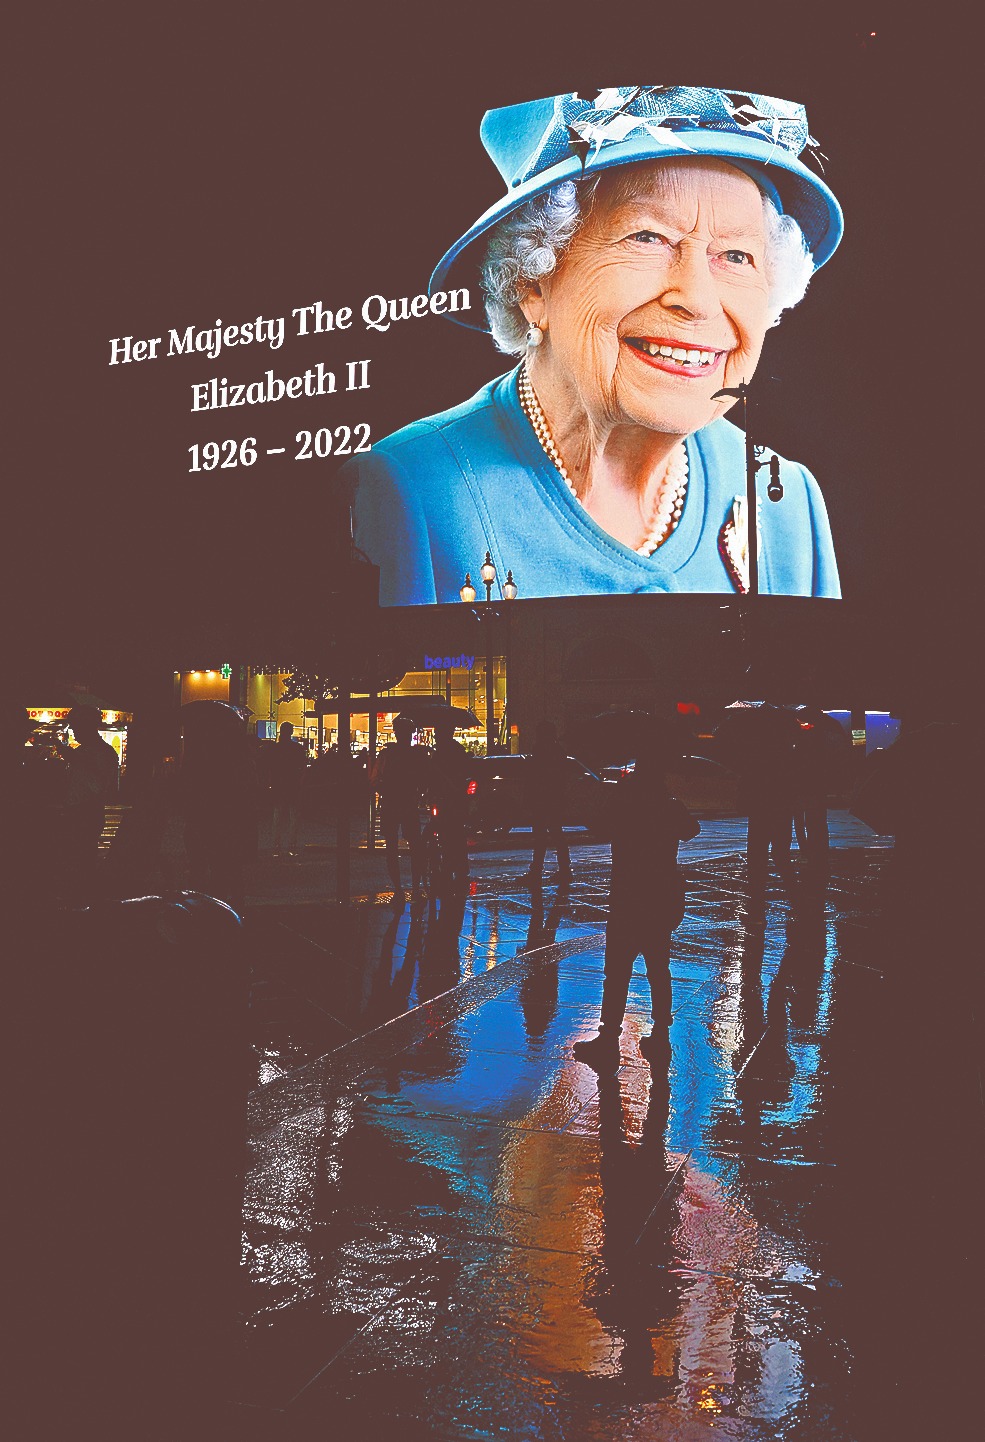 倫敦最旺購物區Piccadilly Circus的大銀幕亦播放悼念女皇的訊息。